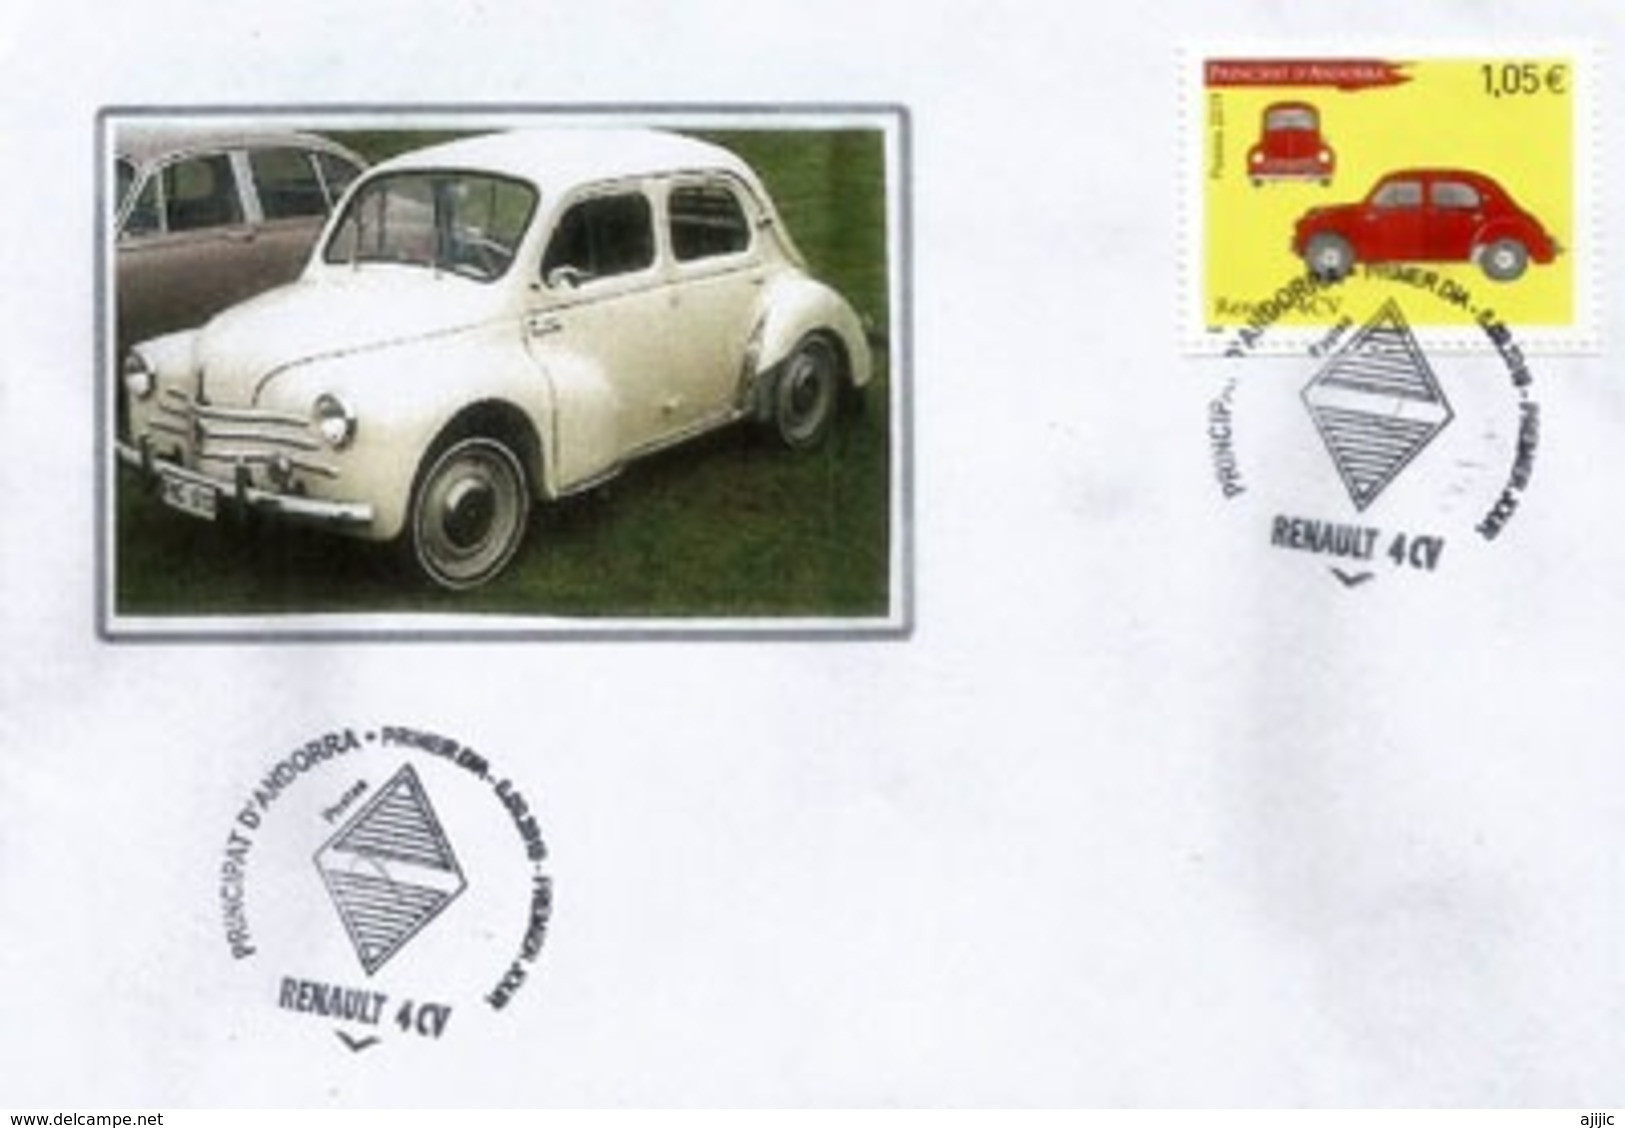 ANDORRA. Renault 4CV, Année 1947. émission Année 2019.  Oblitération Illustrée Losange Renault.  FDC - Brieven En Documenten